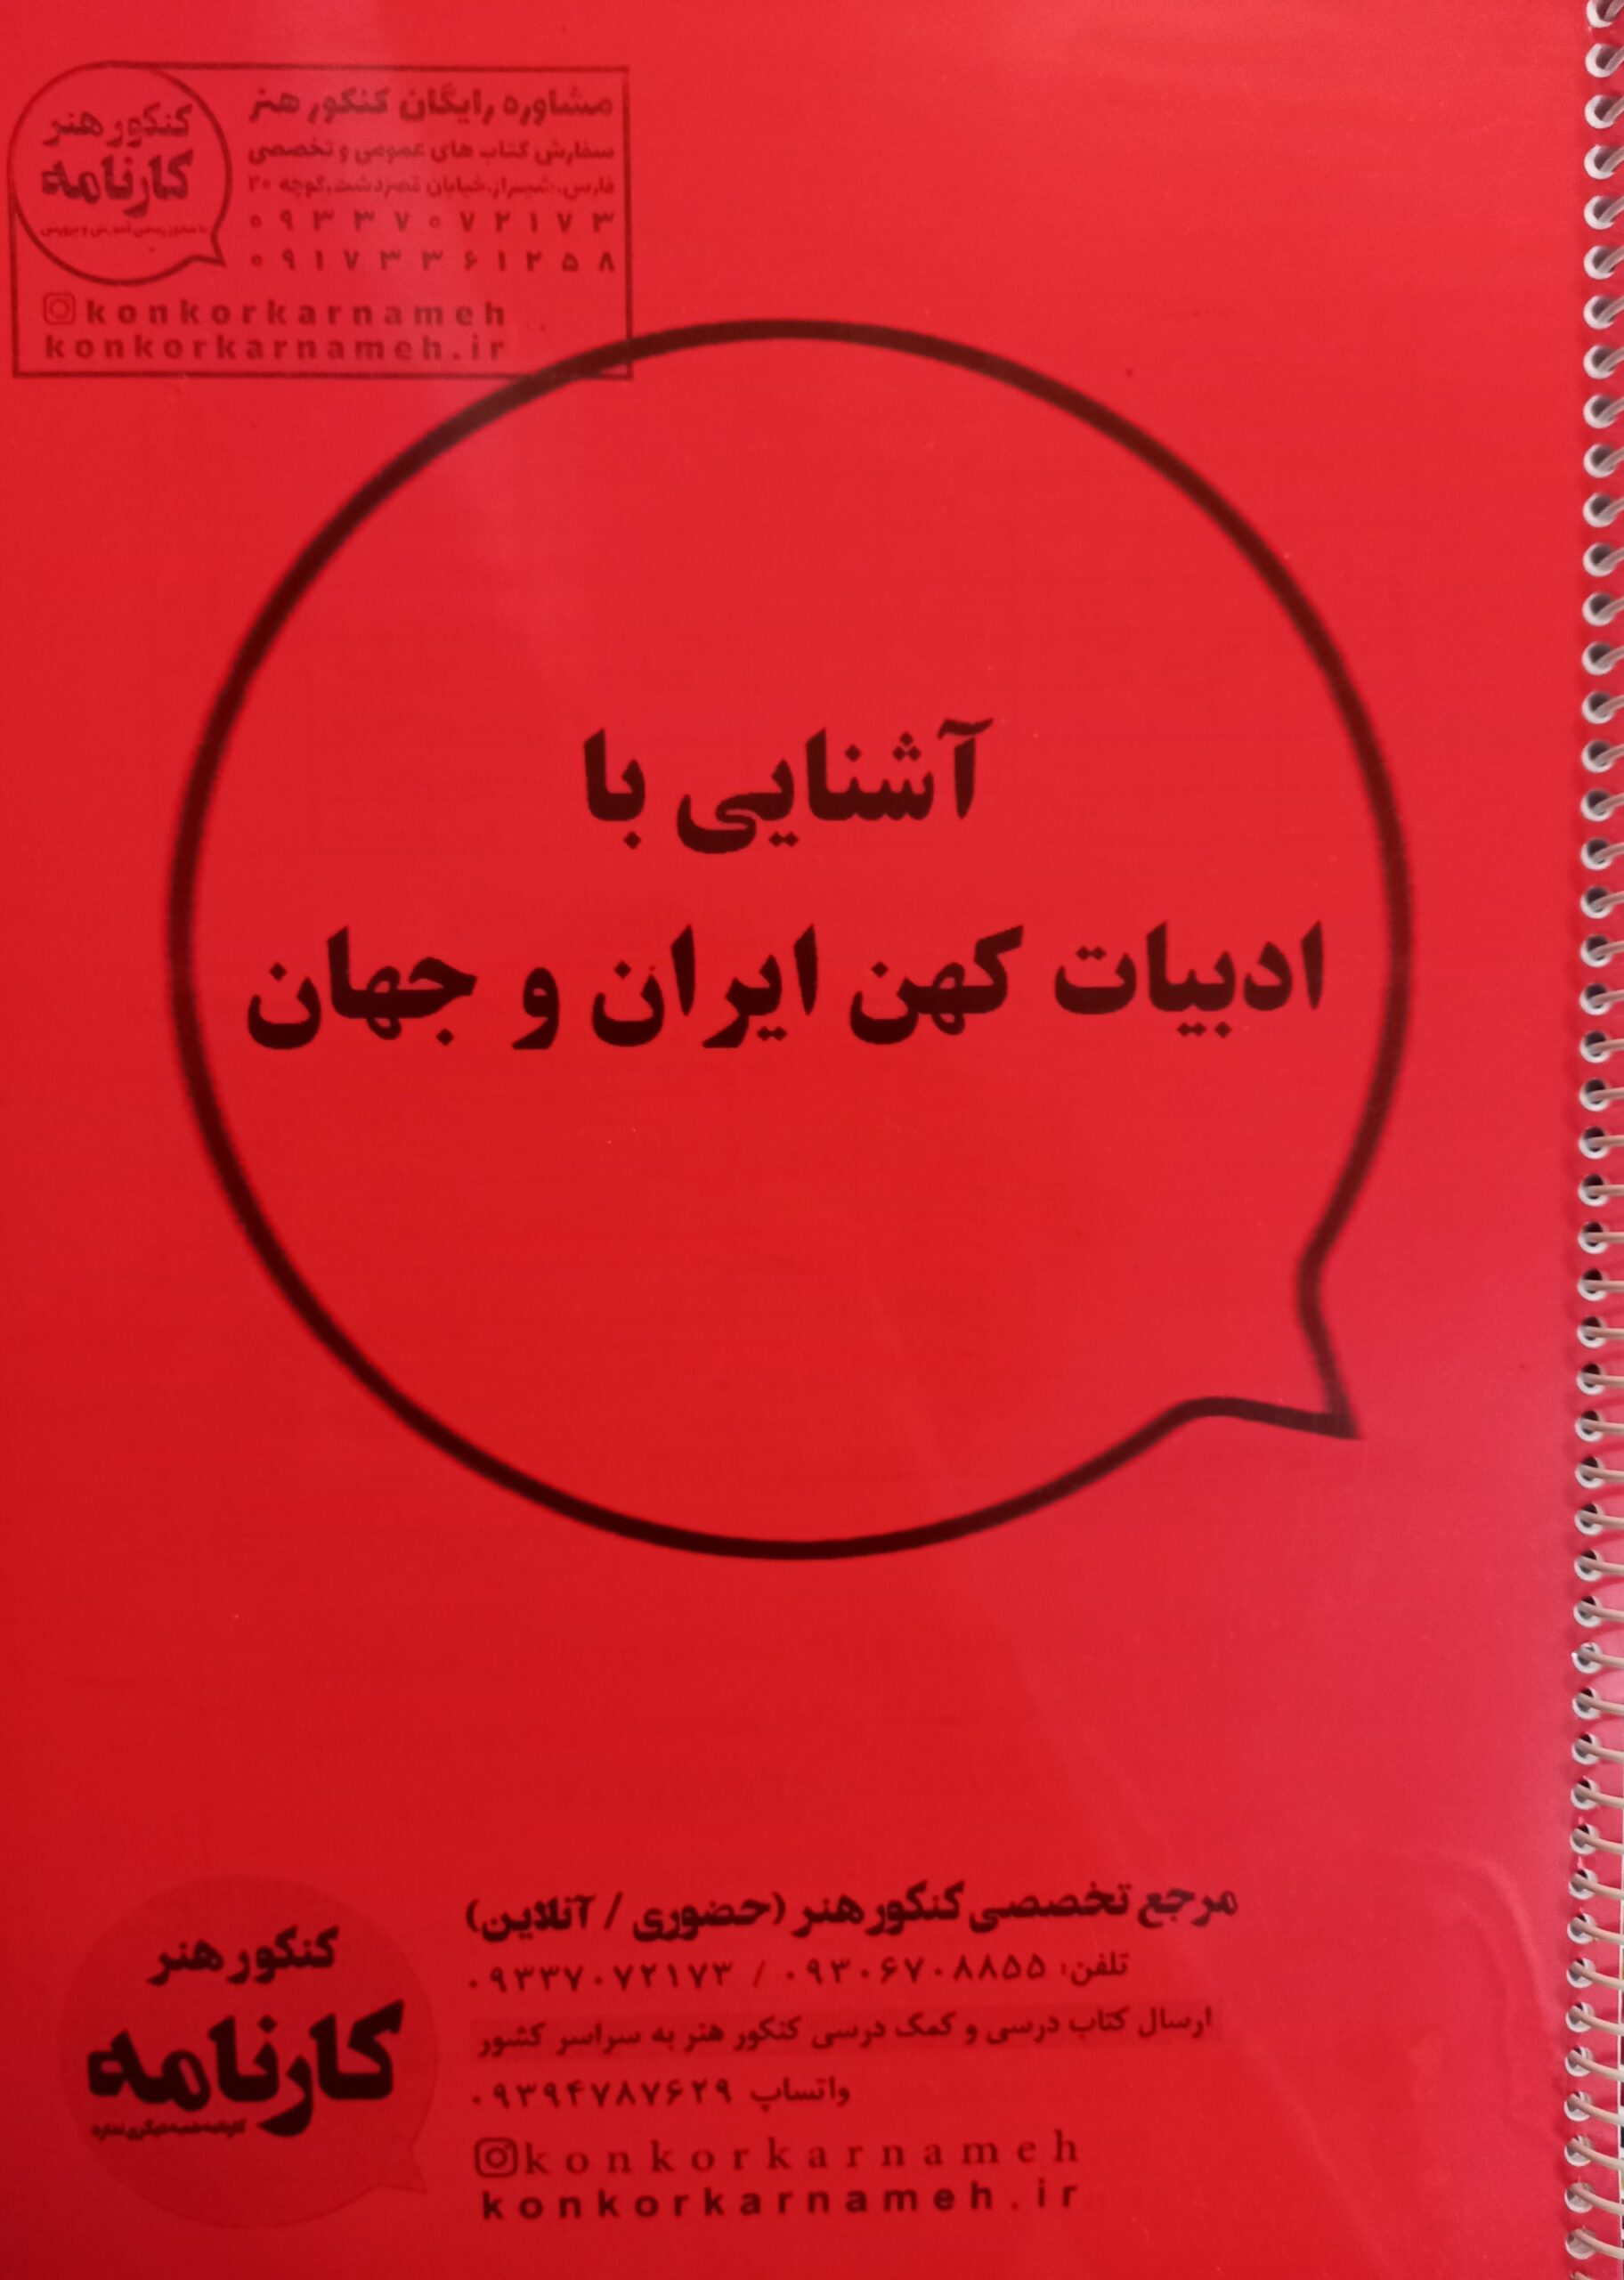 آشنایی با ادبیات کهن ایران و جهان -۲۱۰۶۲۳